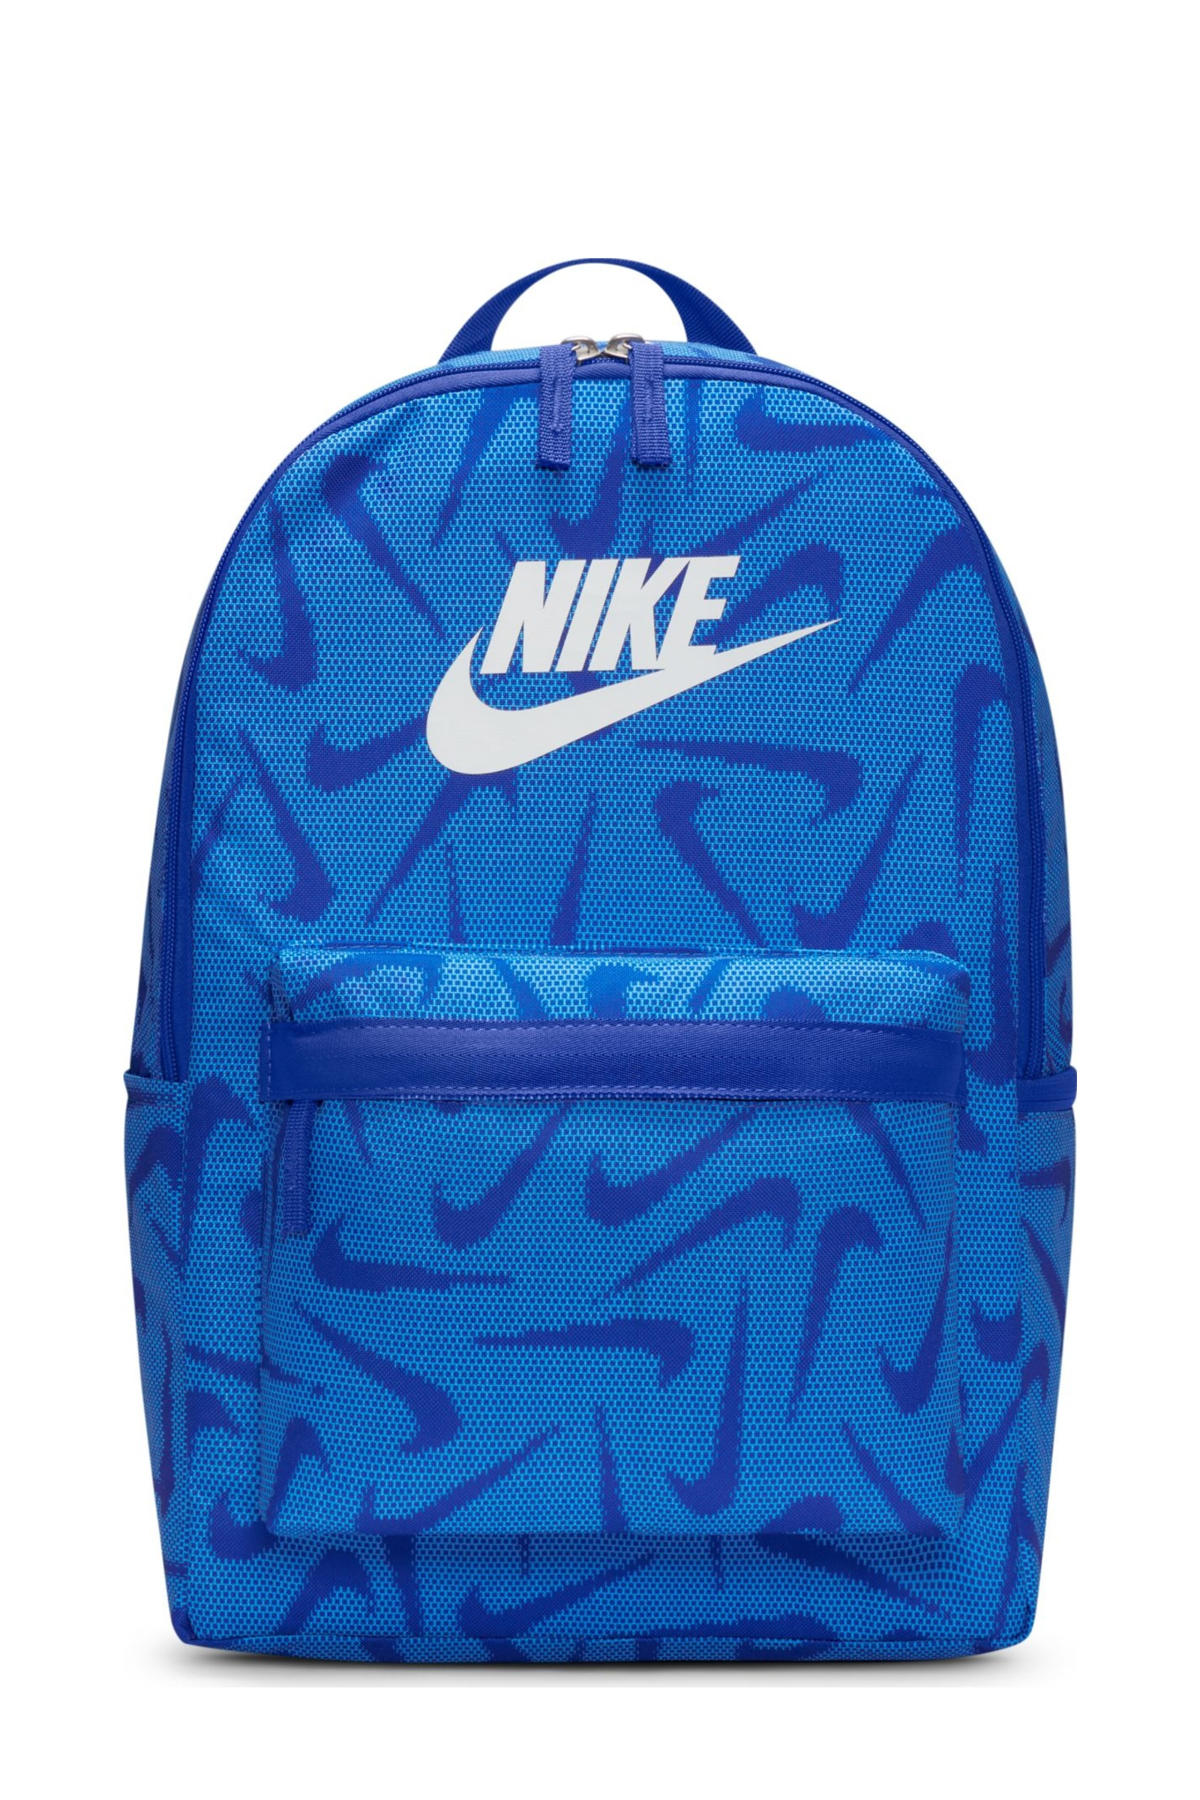 Super goed stof in de ogen gooien Werkgever Nike rugzak kobaltblauw/blauw/wit | wehkamp